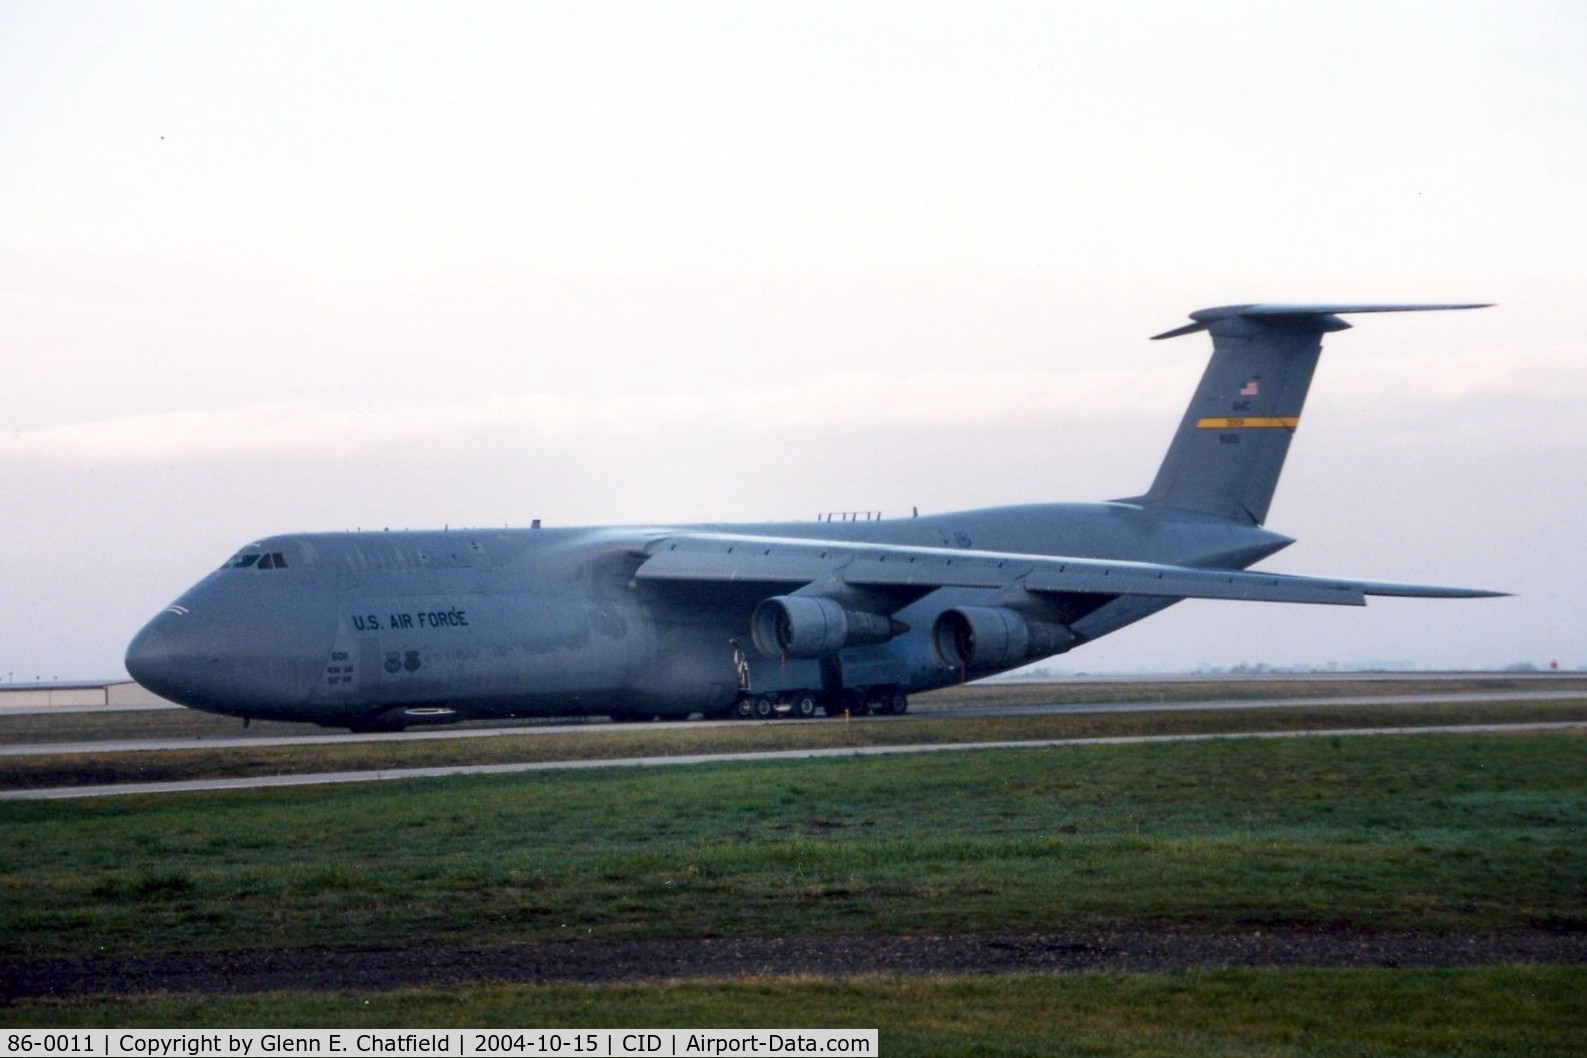 86-0011, 1986 Lockheed C-5M Super Galaxy C/N 500-0097, C-5B in for Presidential support